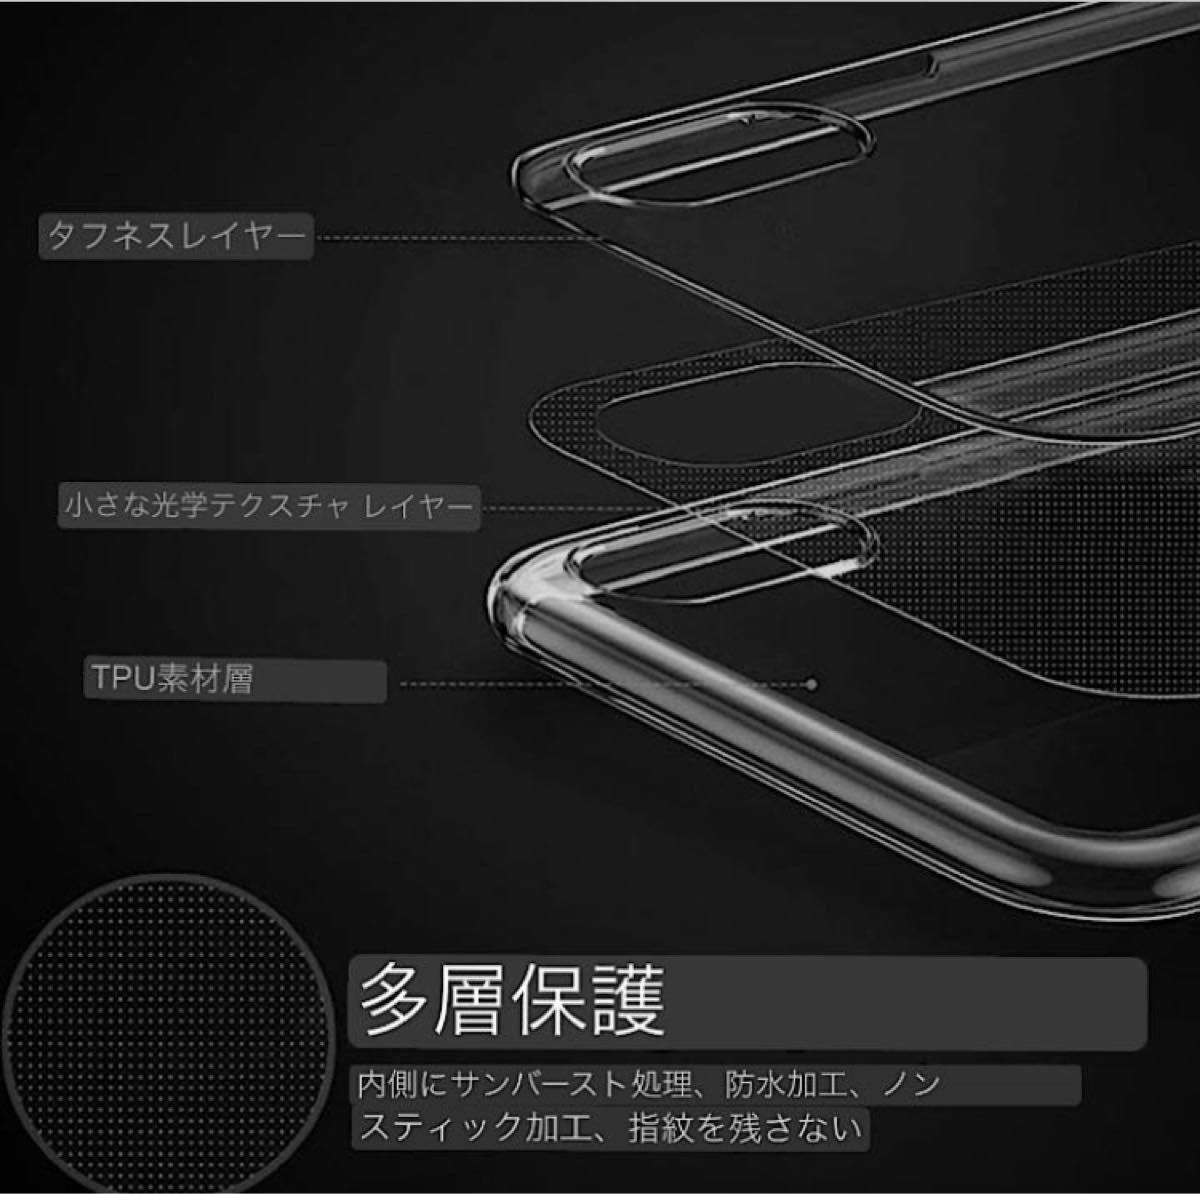 新品未使用品 韓国サンリオ 正規品 ハンギョドン iPhone7/8 SE2 SE3用ケース